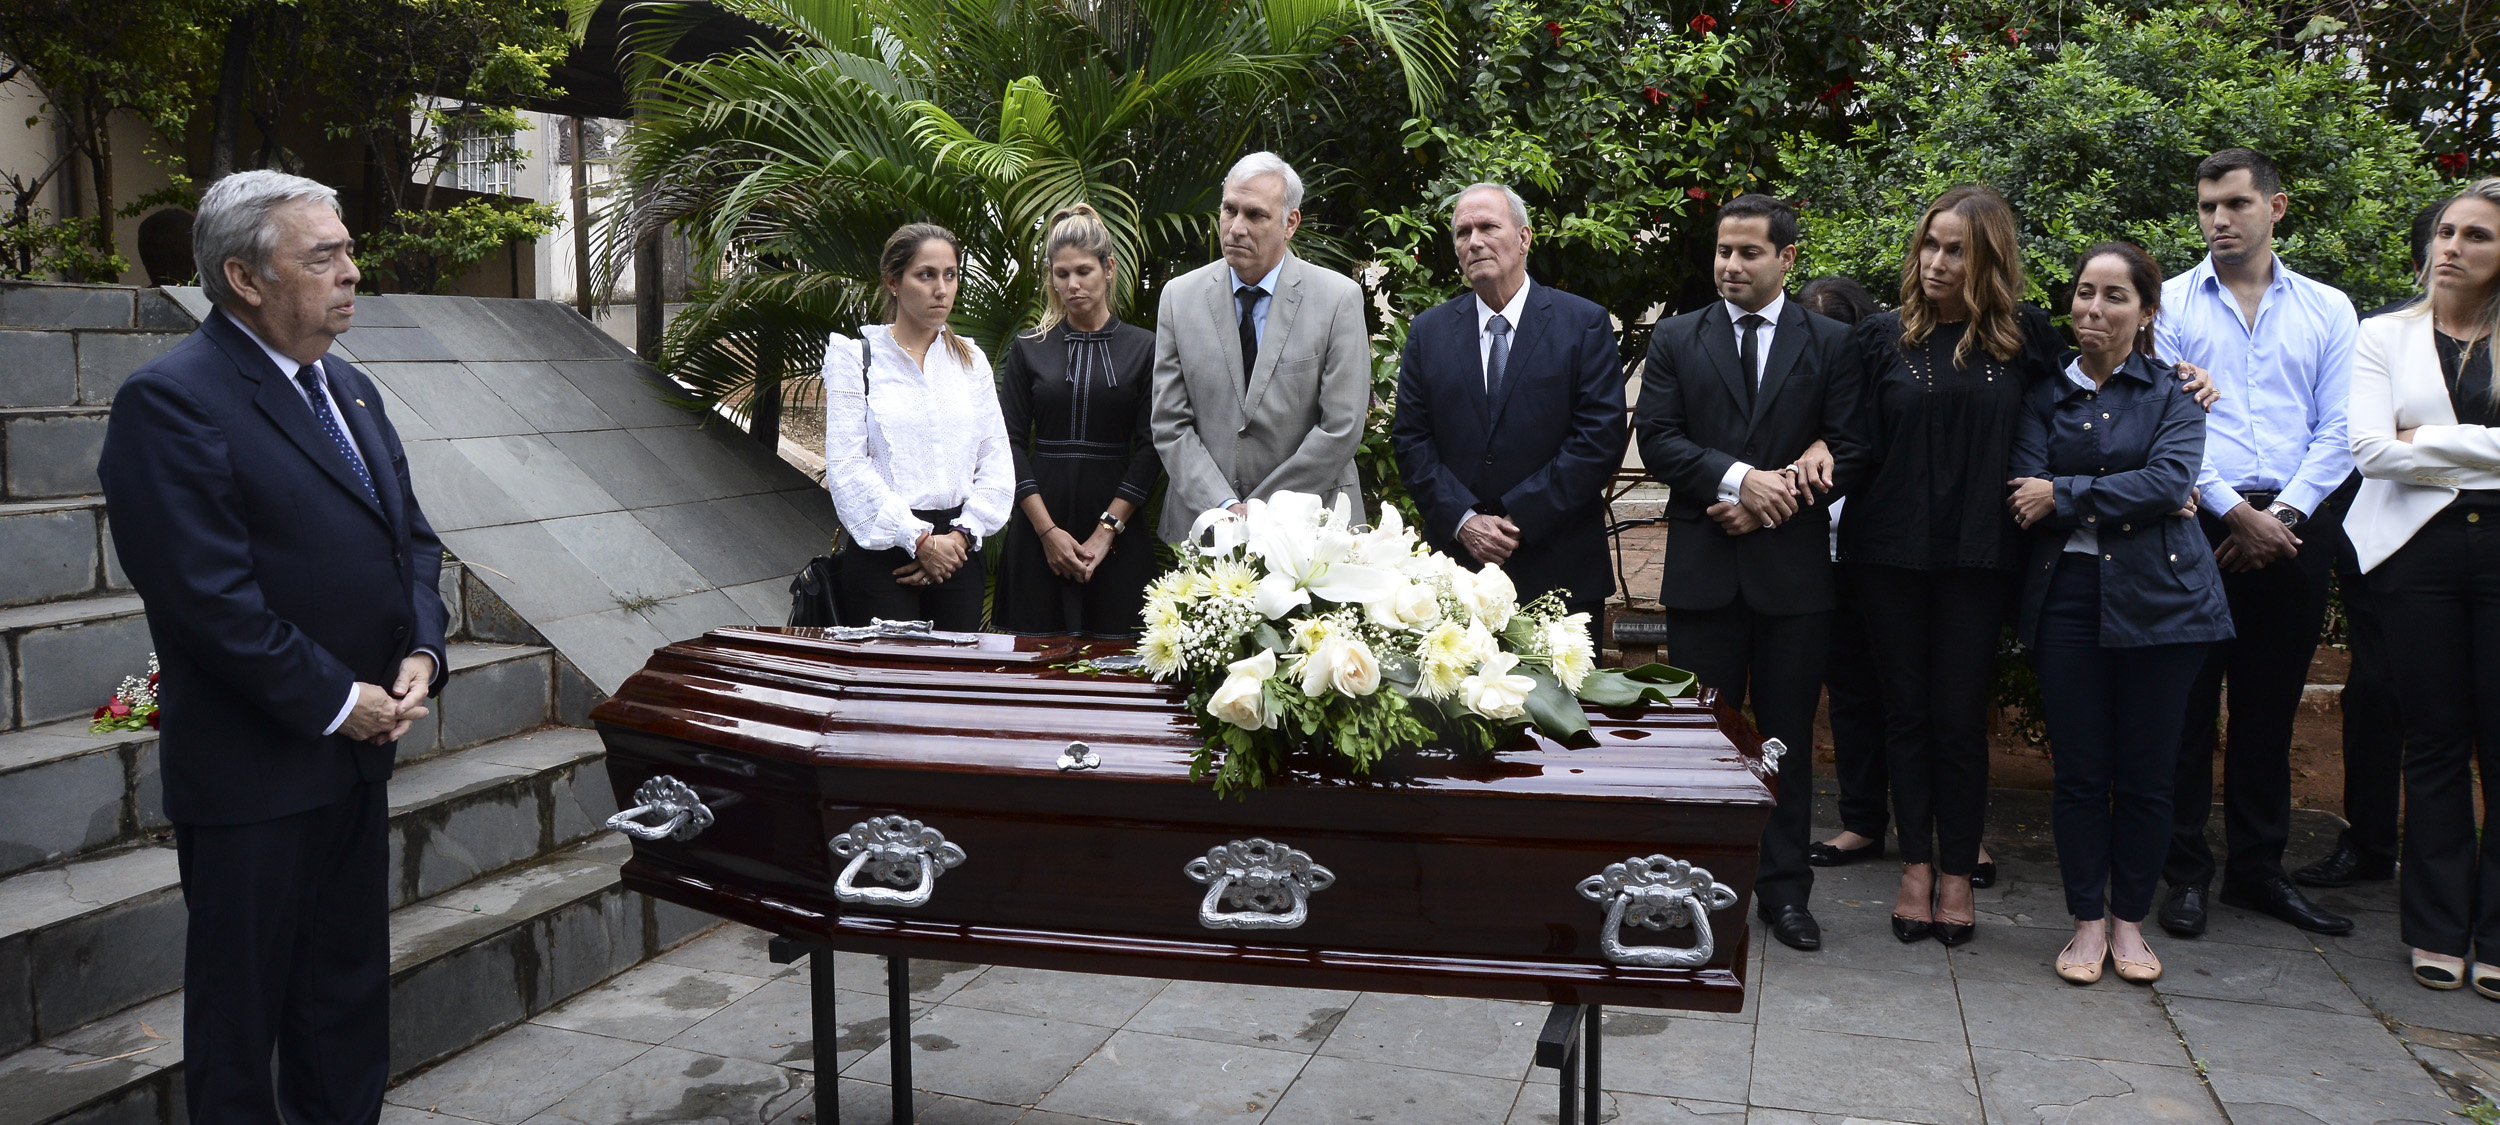 Cancillería rindió sentido homenaje en las exequias del excanciller Carlos A. Saldívar